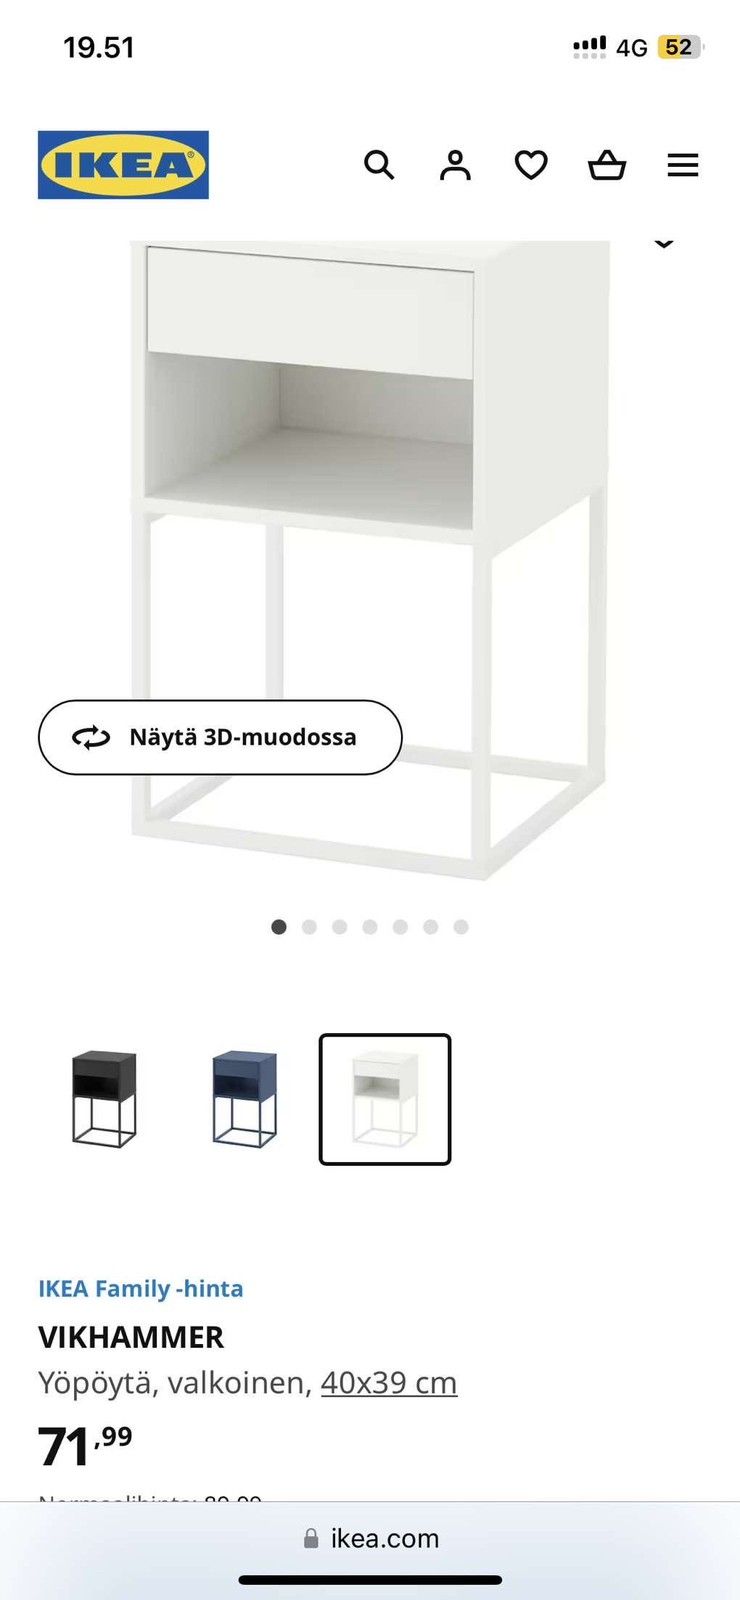 Ikean yöpöydät 2 kpl